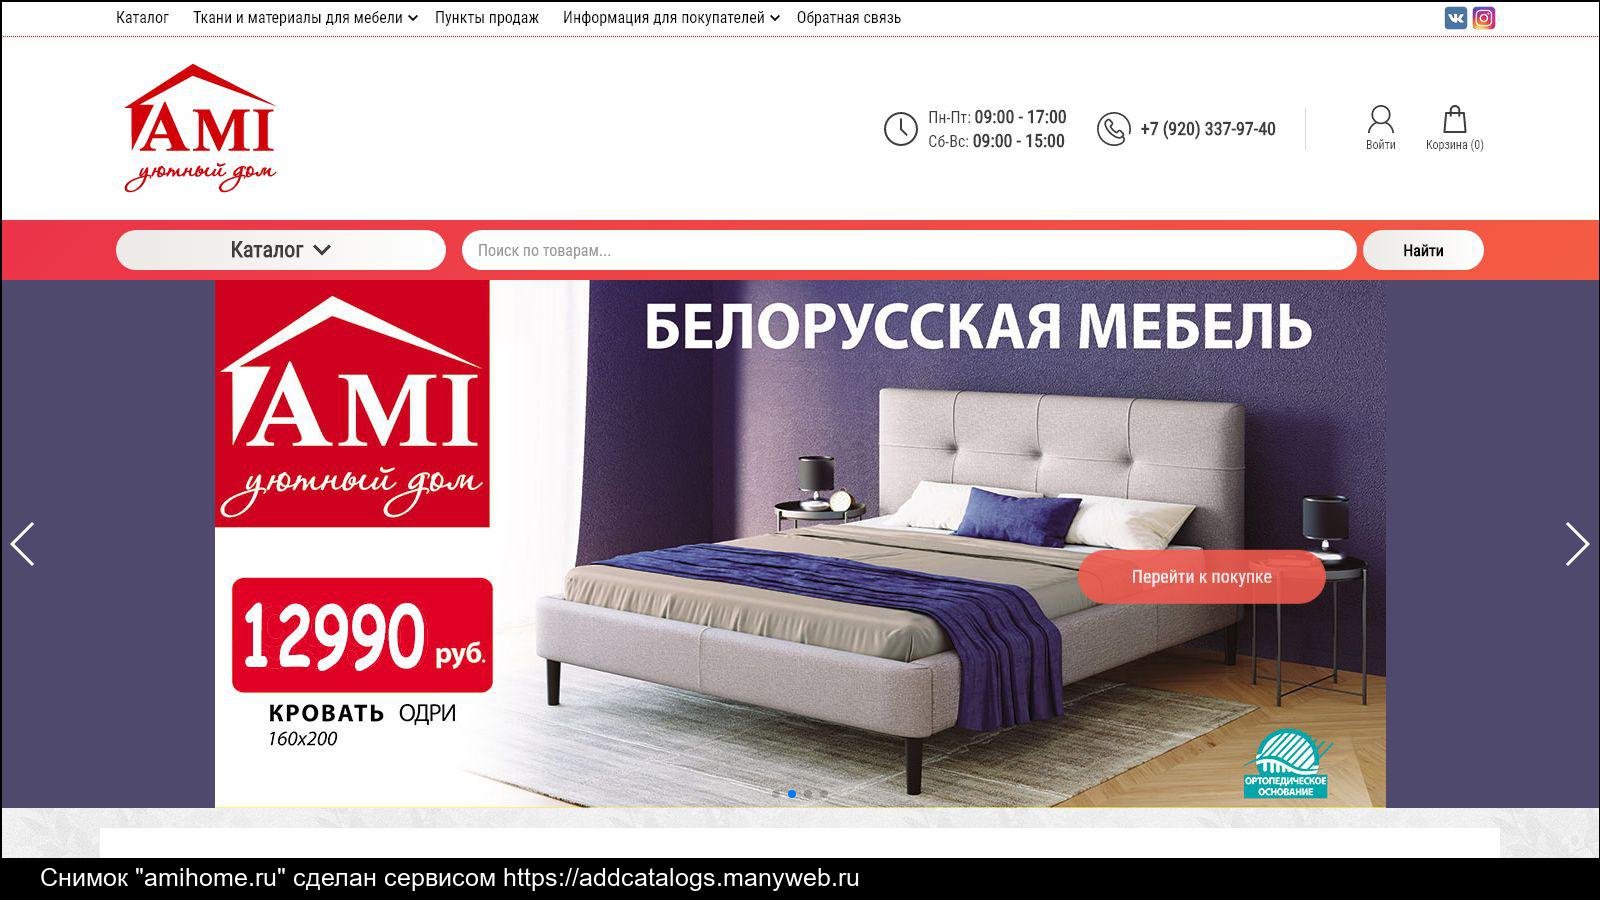 Ами хоум. Реклама мебели. Ami белорусская мебель. Поинтернету ру интернет магазин мебели в Москве. Мебель Белоруссии реклама.